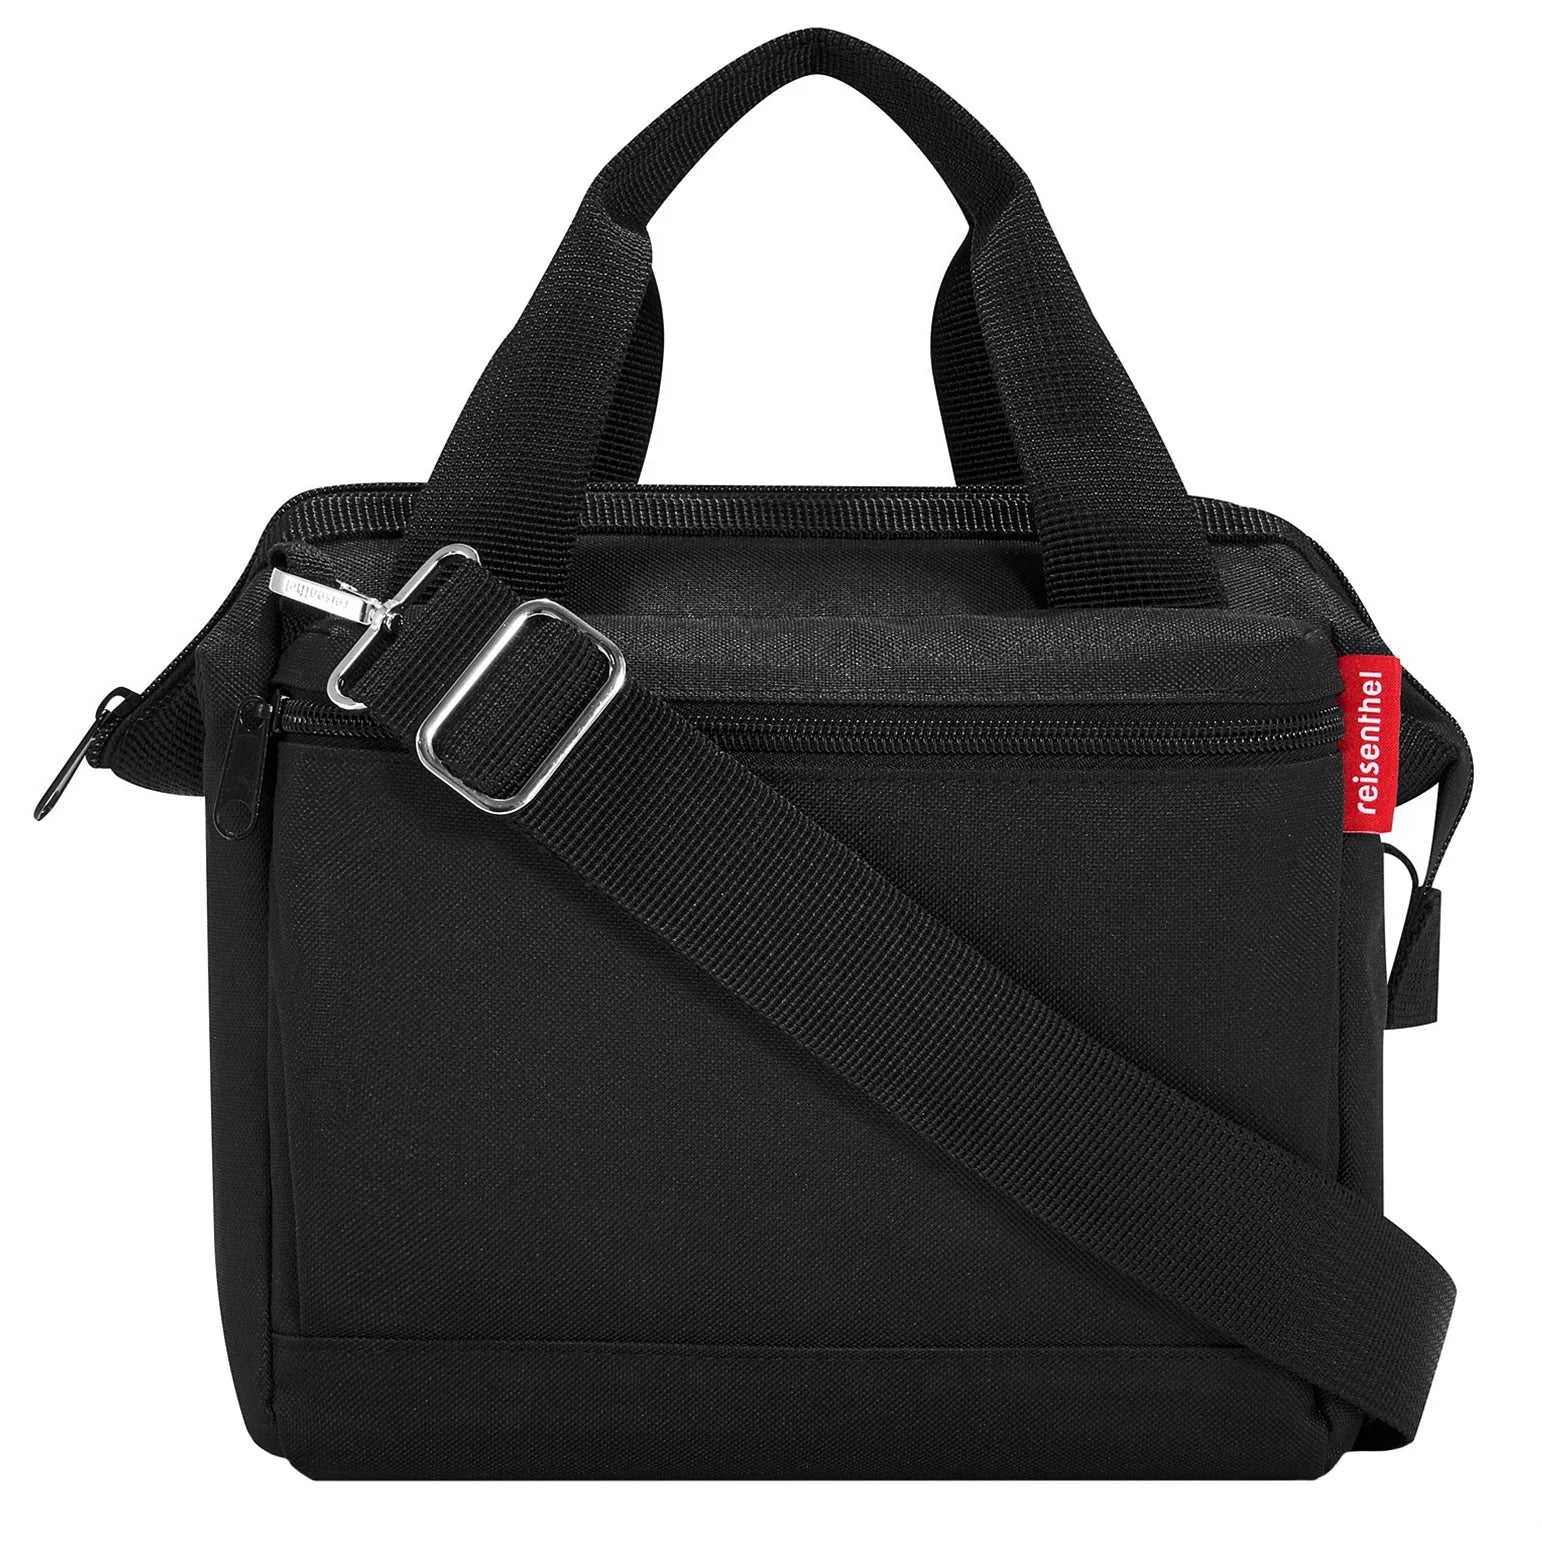 Reisenthel Travelling Allrounder Cross shoulder bag 24 cm - black